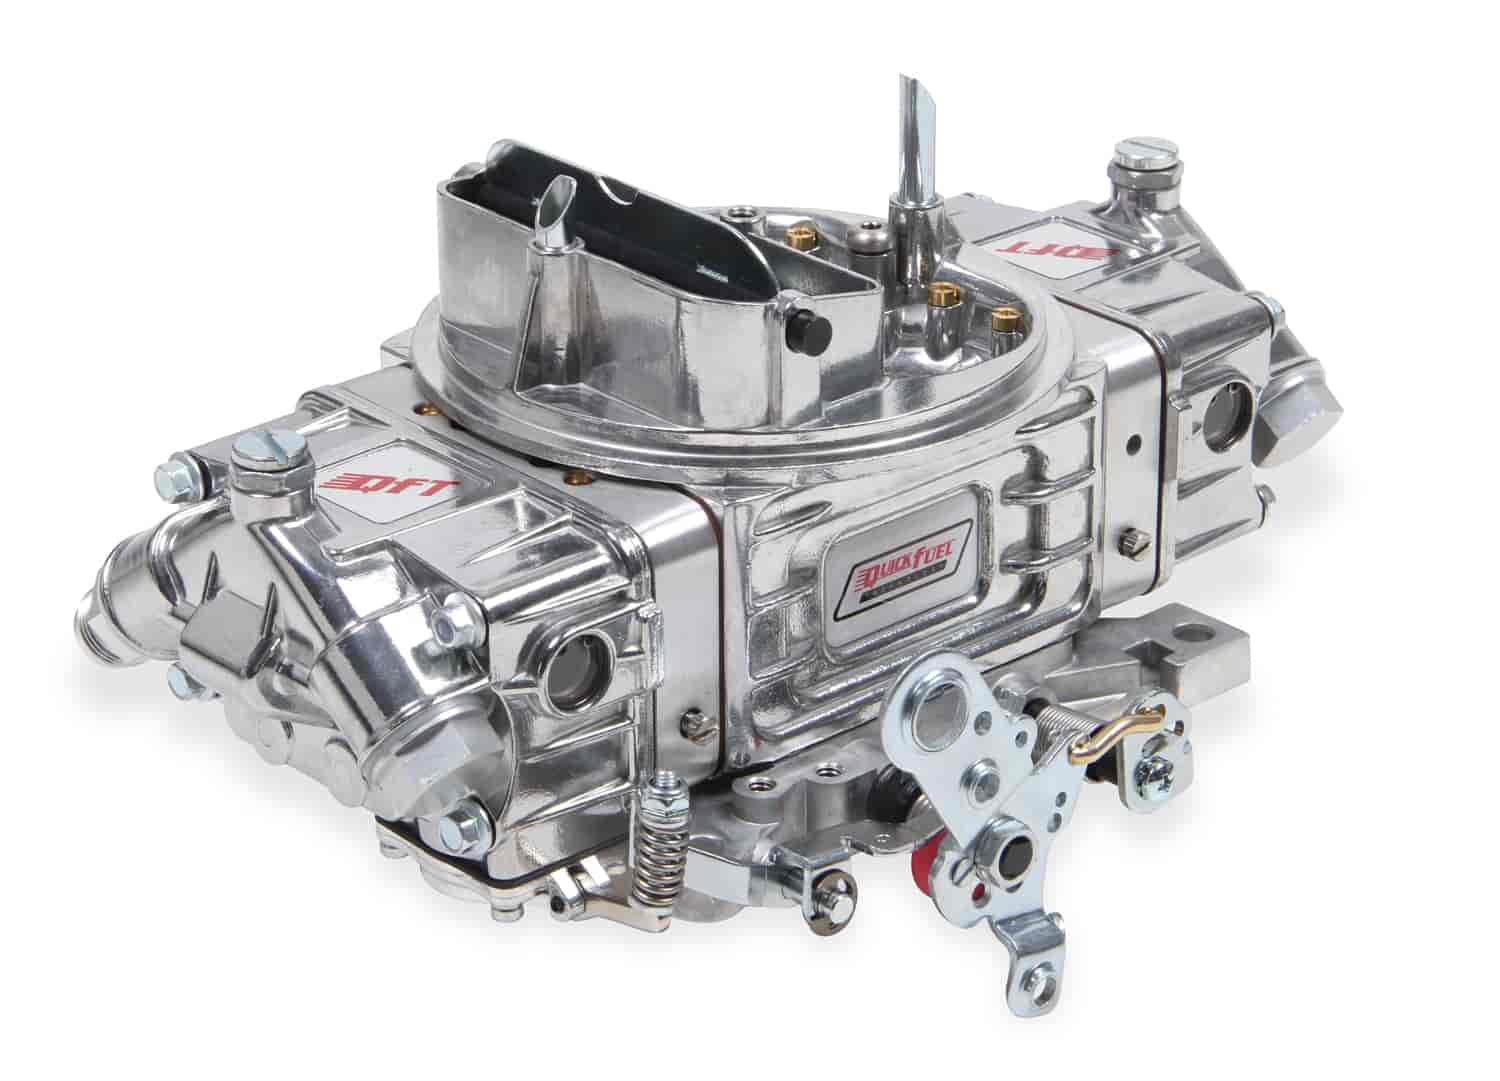 850 CFM 4-bbl SSR Carburetor For Auto w/ Footbrake at Sea-Level Vacuum Secondary